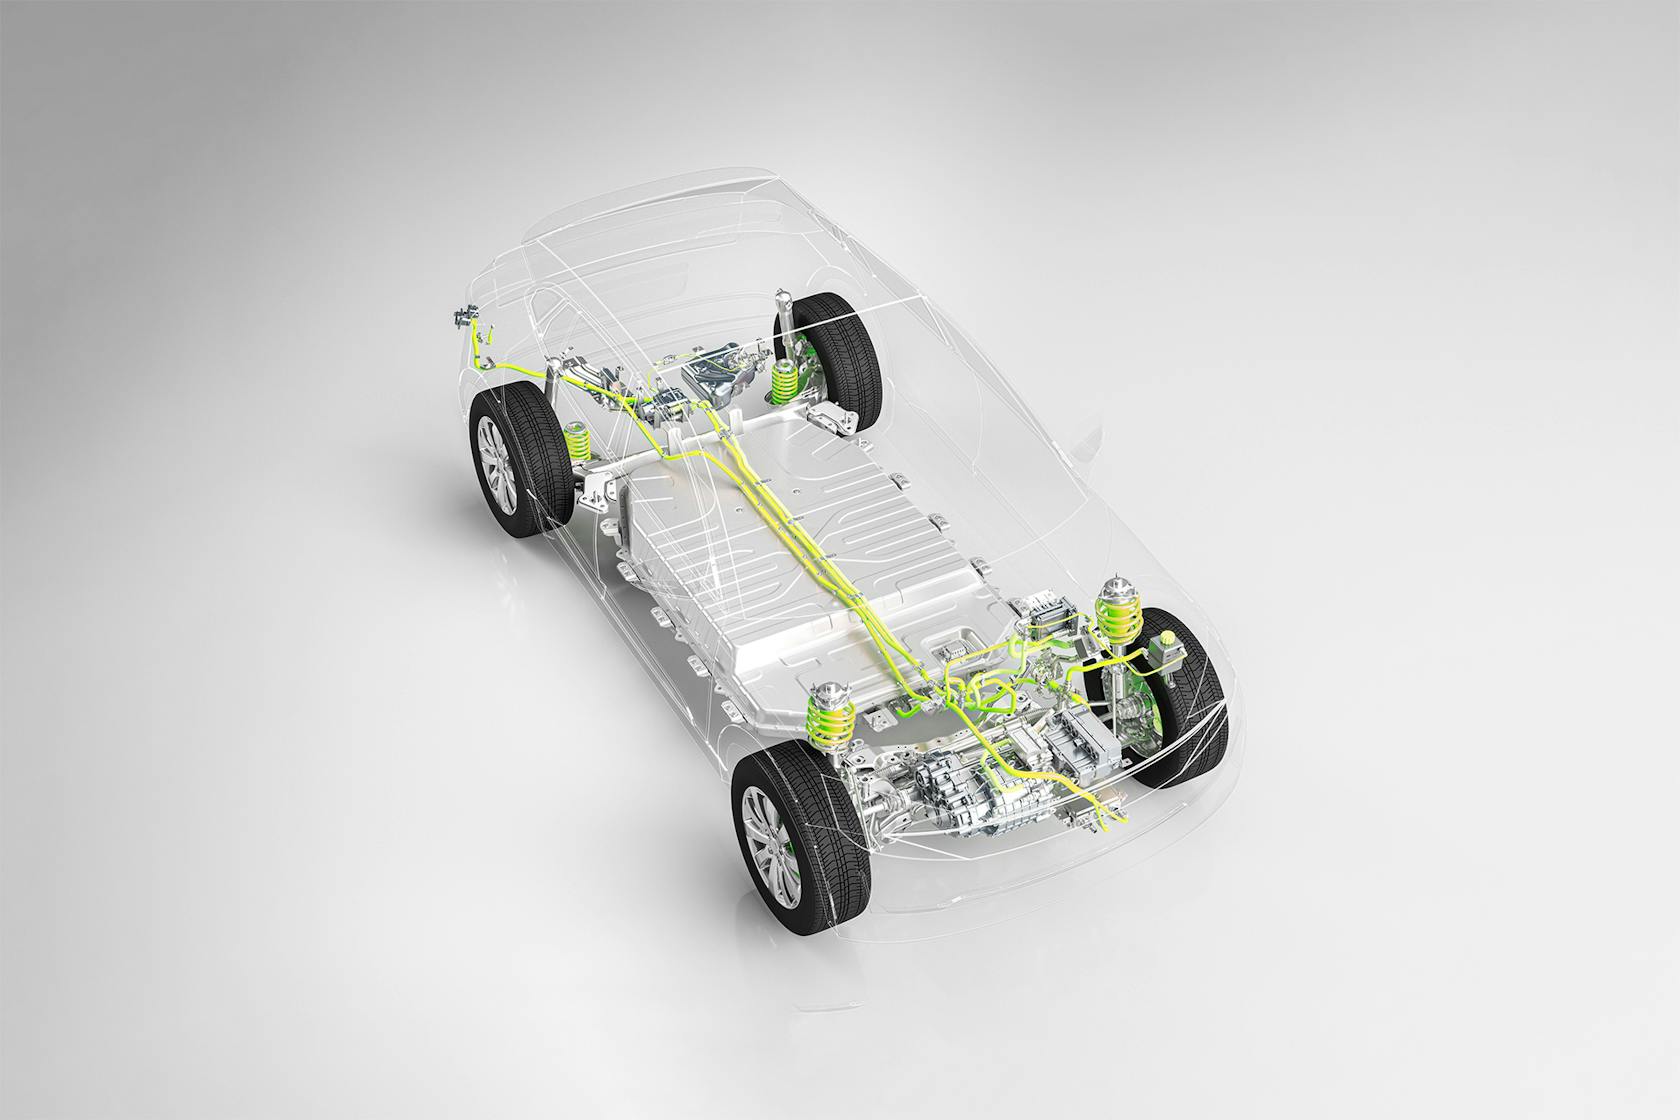 一辆车身透明的汽车展示了电动驱动和电池技术